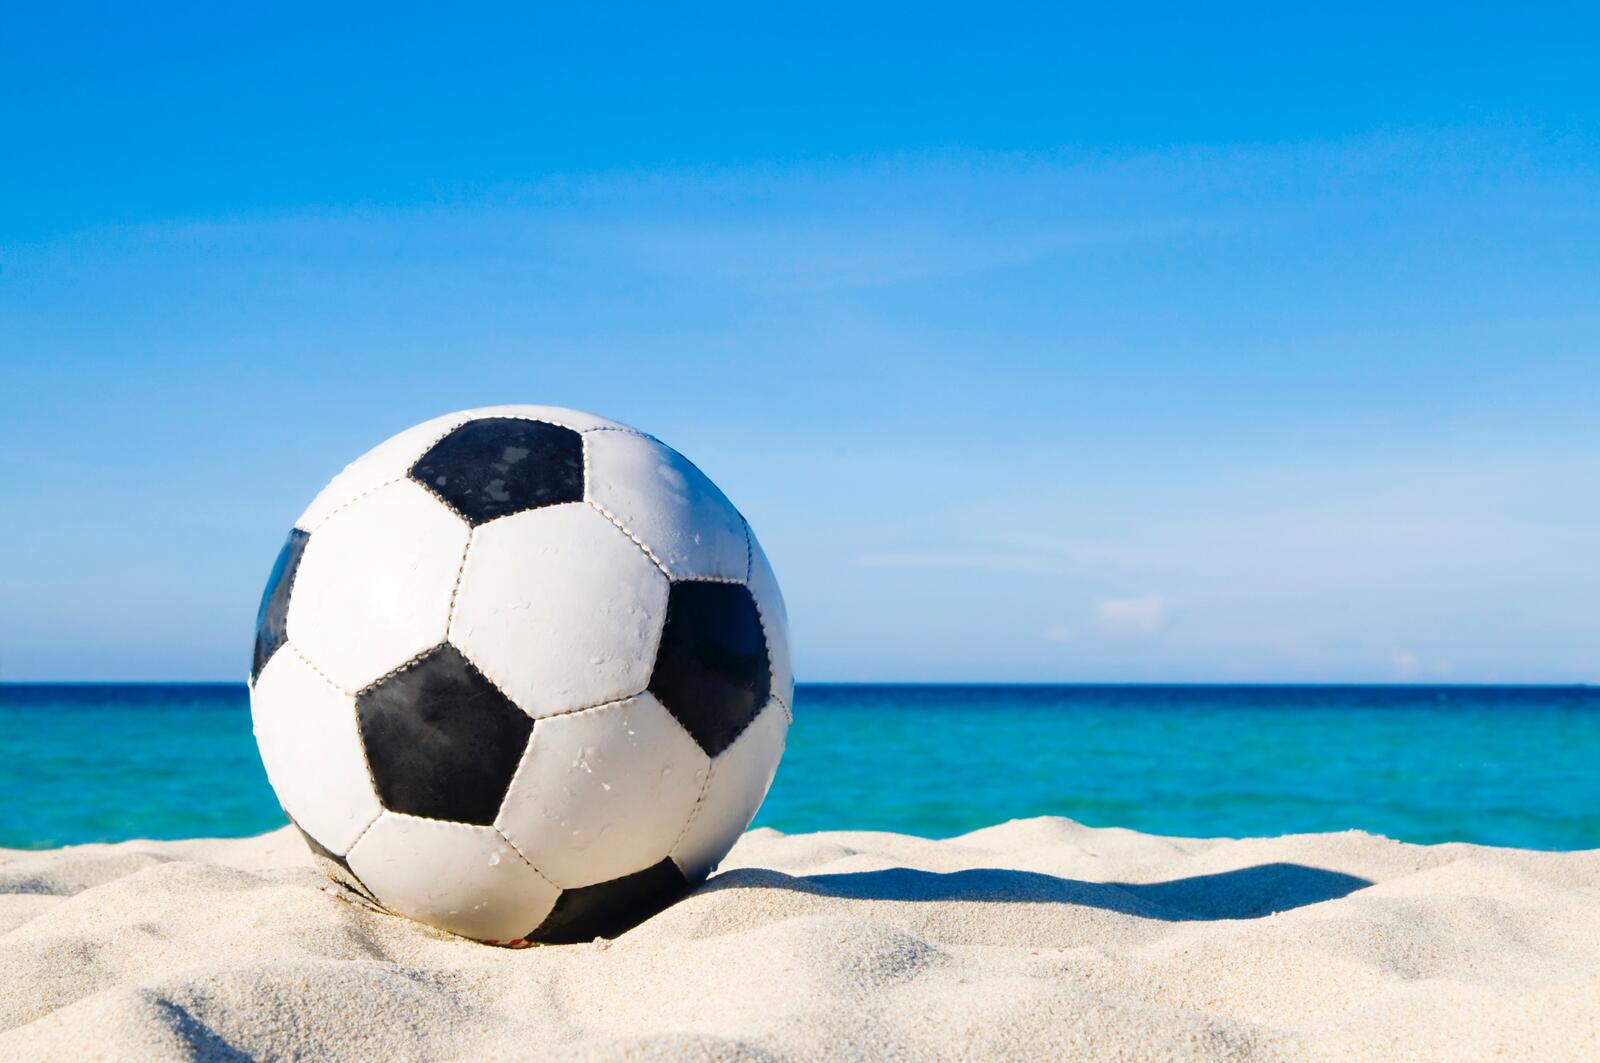 Free photo A soccer ball on a sandy beach